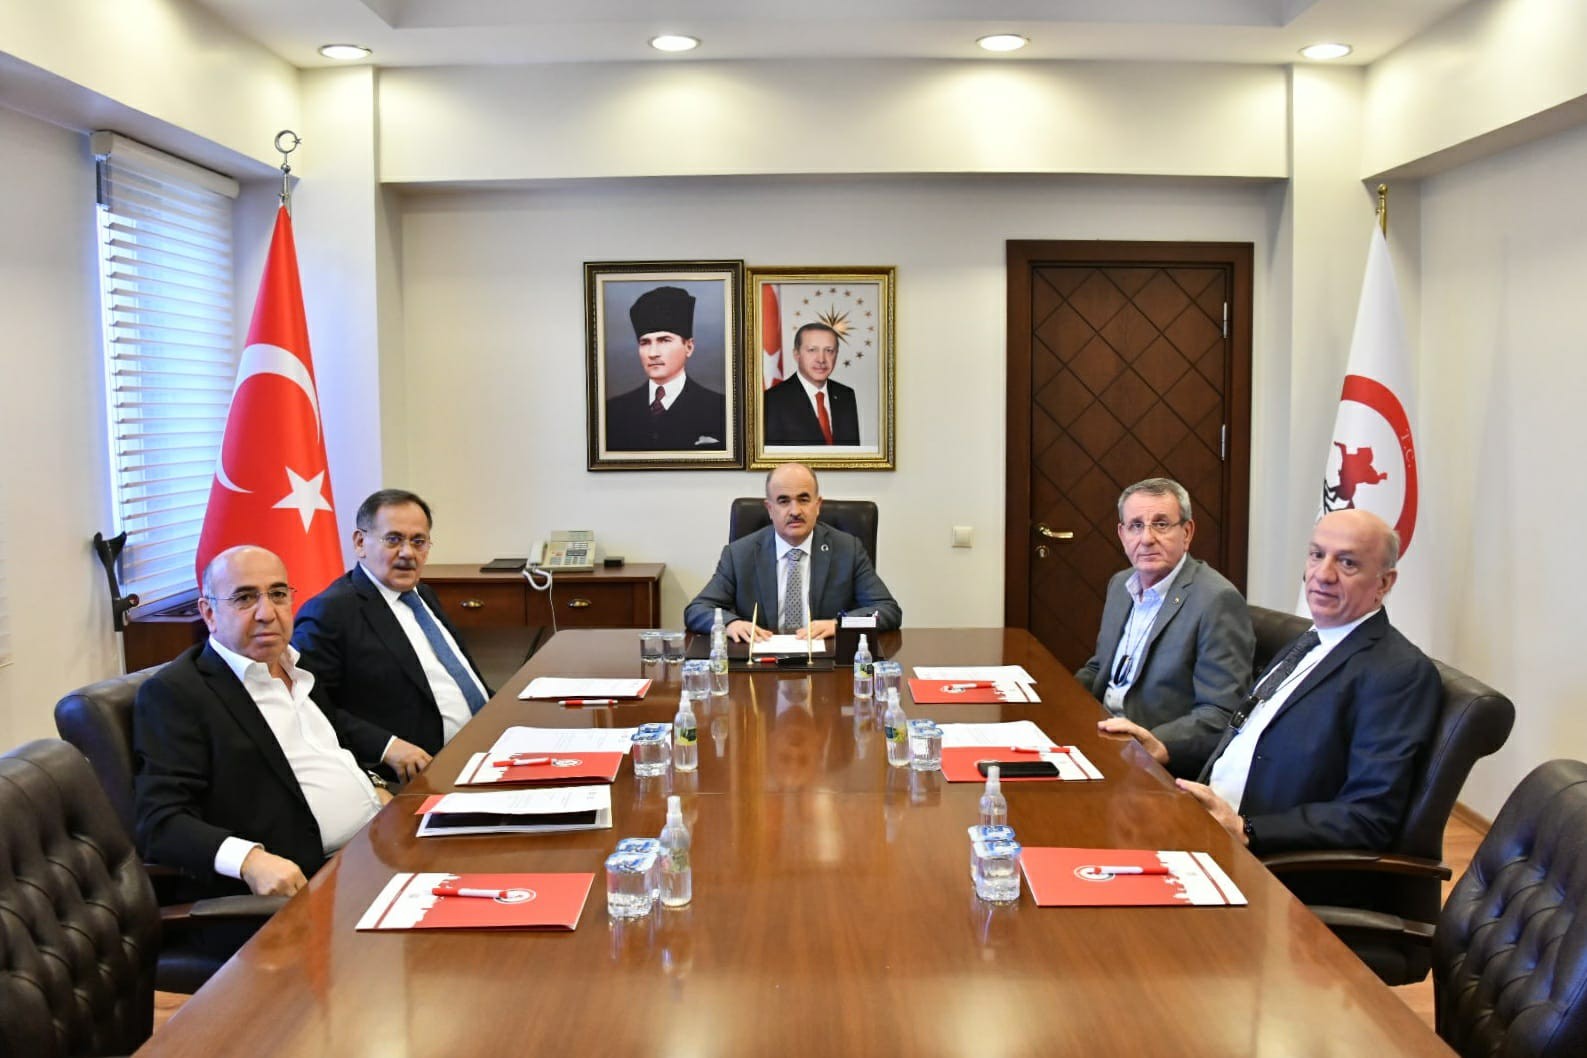  Samsun Valisi Doç. Dr. Zülkif Dağlı, "Lojistik Merkezi'nde toplam 5 bin metrekarelik 4 yeni kuru yük dökme deposunun inşaat çalışmaları 2022 yılı sonuna kadar tamamlanacak" dedi